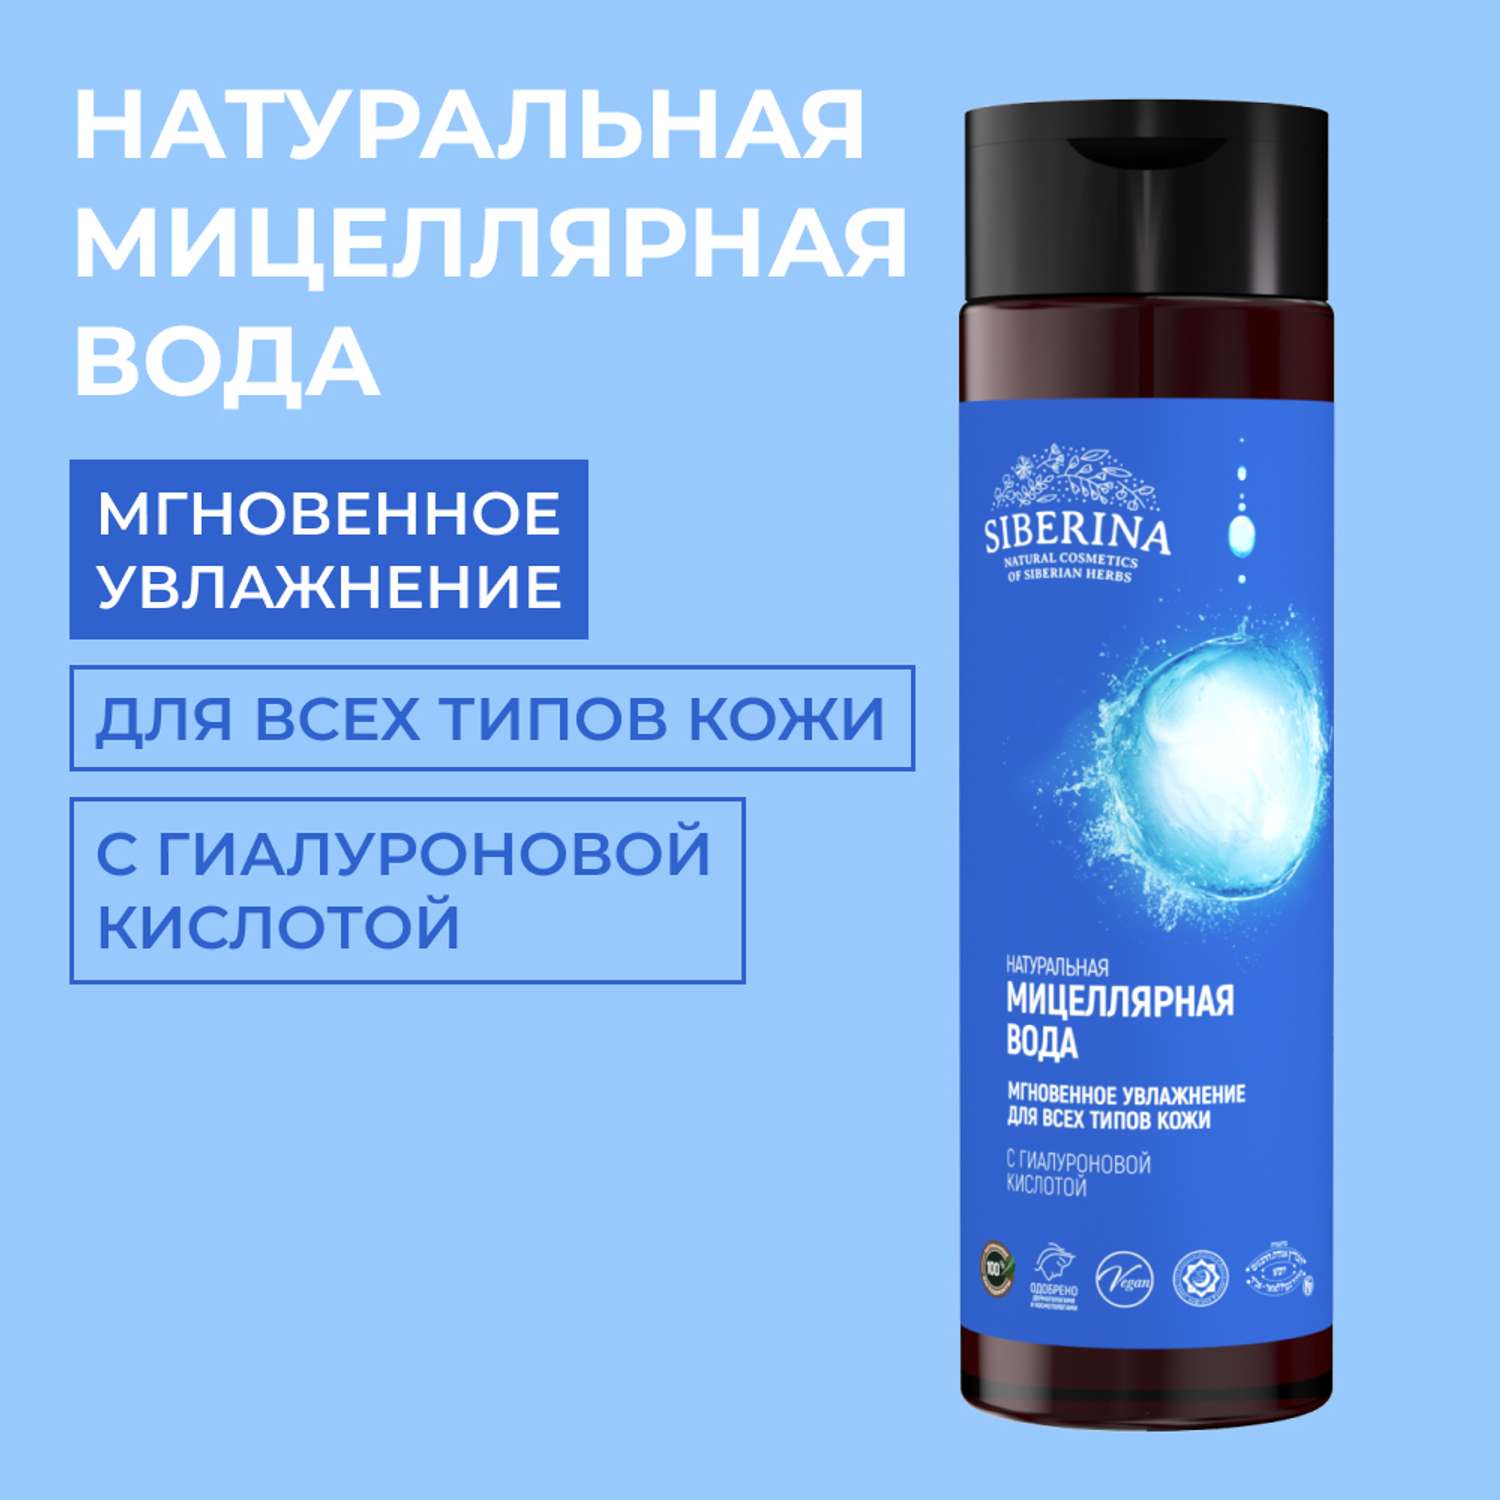 Мицелярная вода Siberina натуральная «Мгновенное увлажнение» для всех типов кожи 200 мл - фото 1